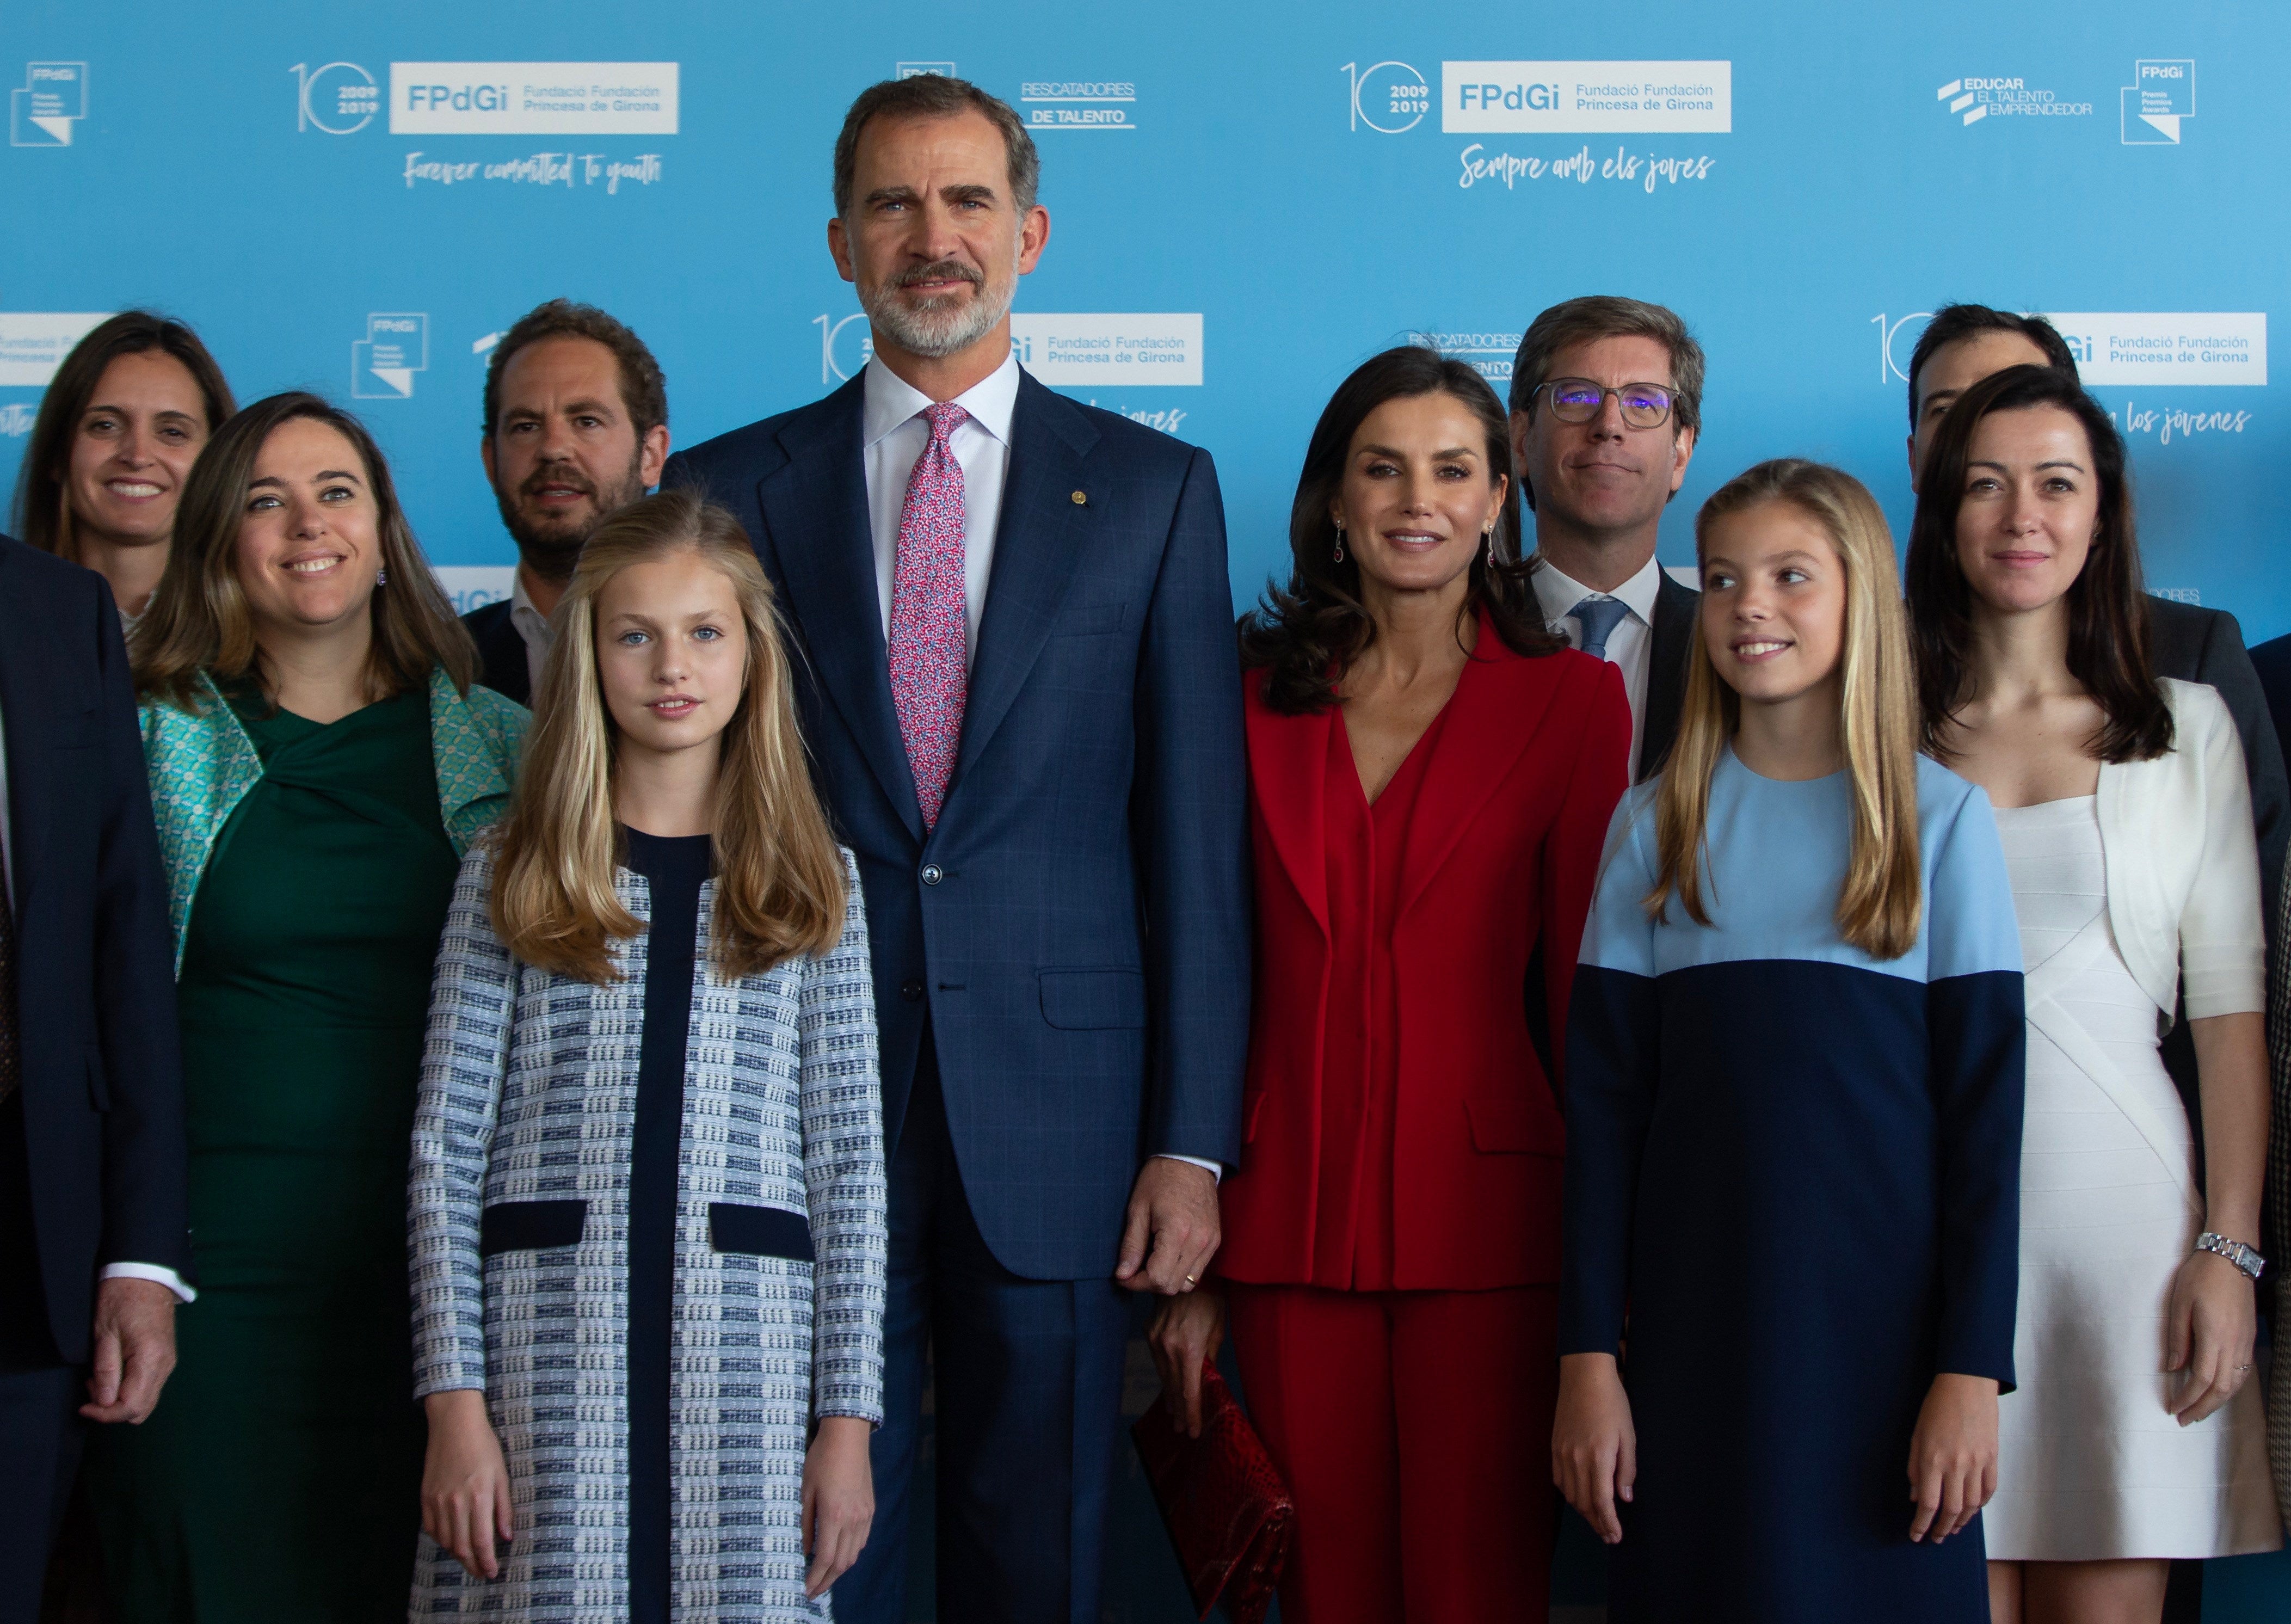 Premios Princesa de Girona 2019: Así ha sido el encuentro de la Princesa  Leonor y los Reyes con los premiados | Última hora Cataluña